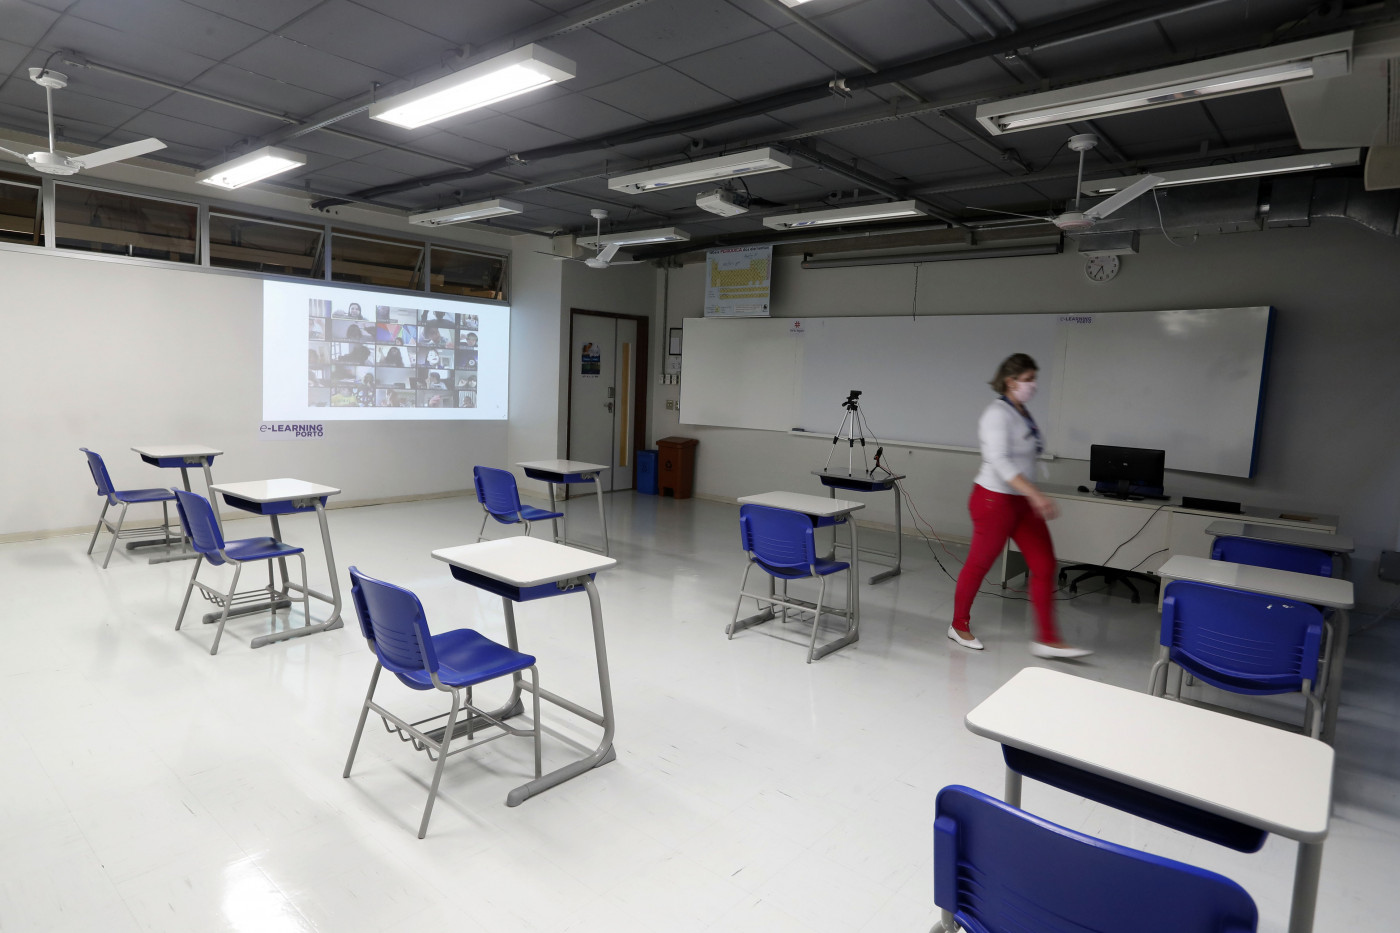 Sala de aulas em escola de São Paulo com retroprojetor, carteiras (separadas com distanciamento apropriado) e um monitor; mulher passa pela sala